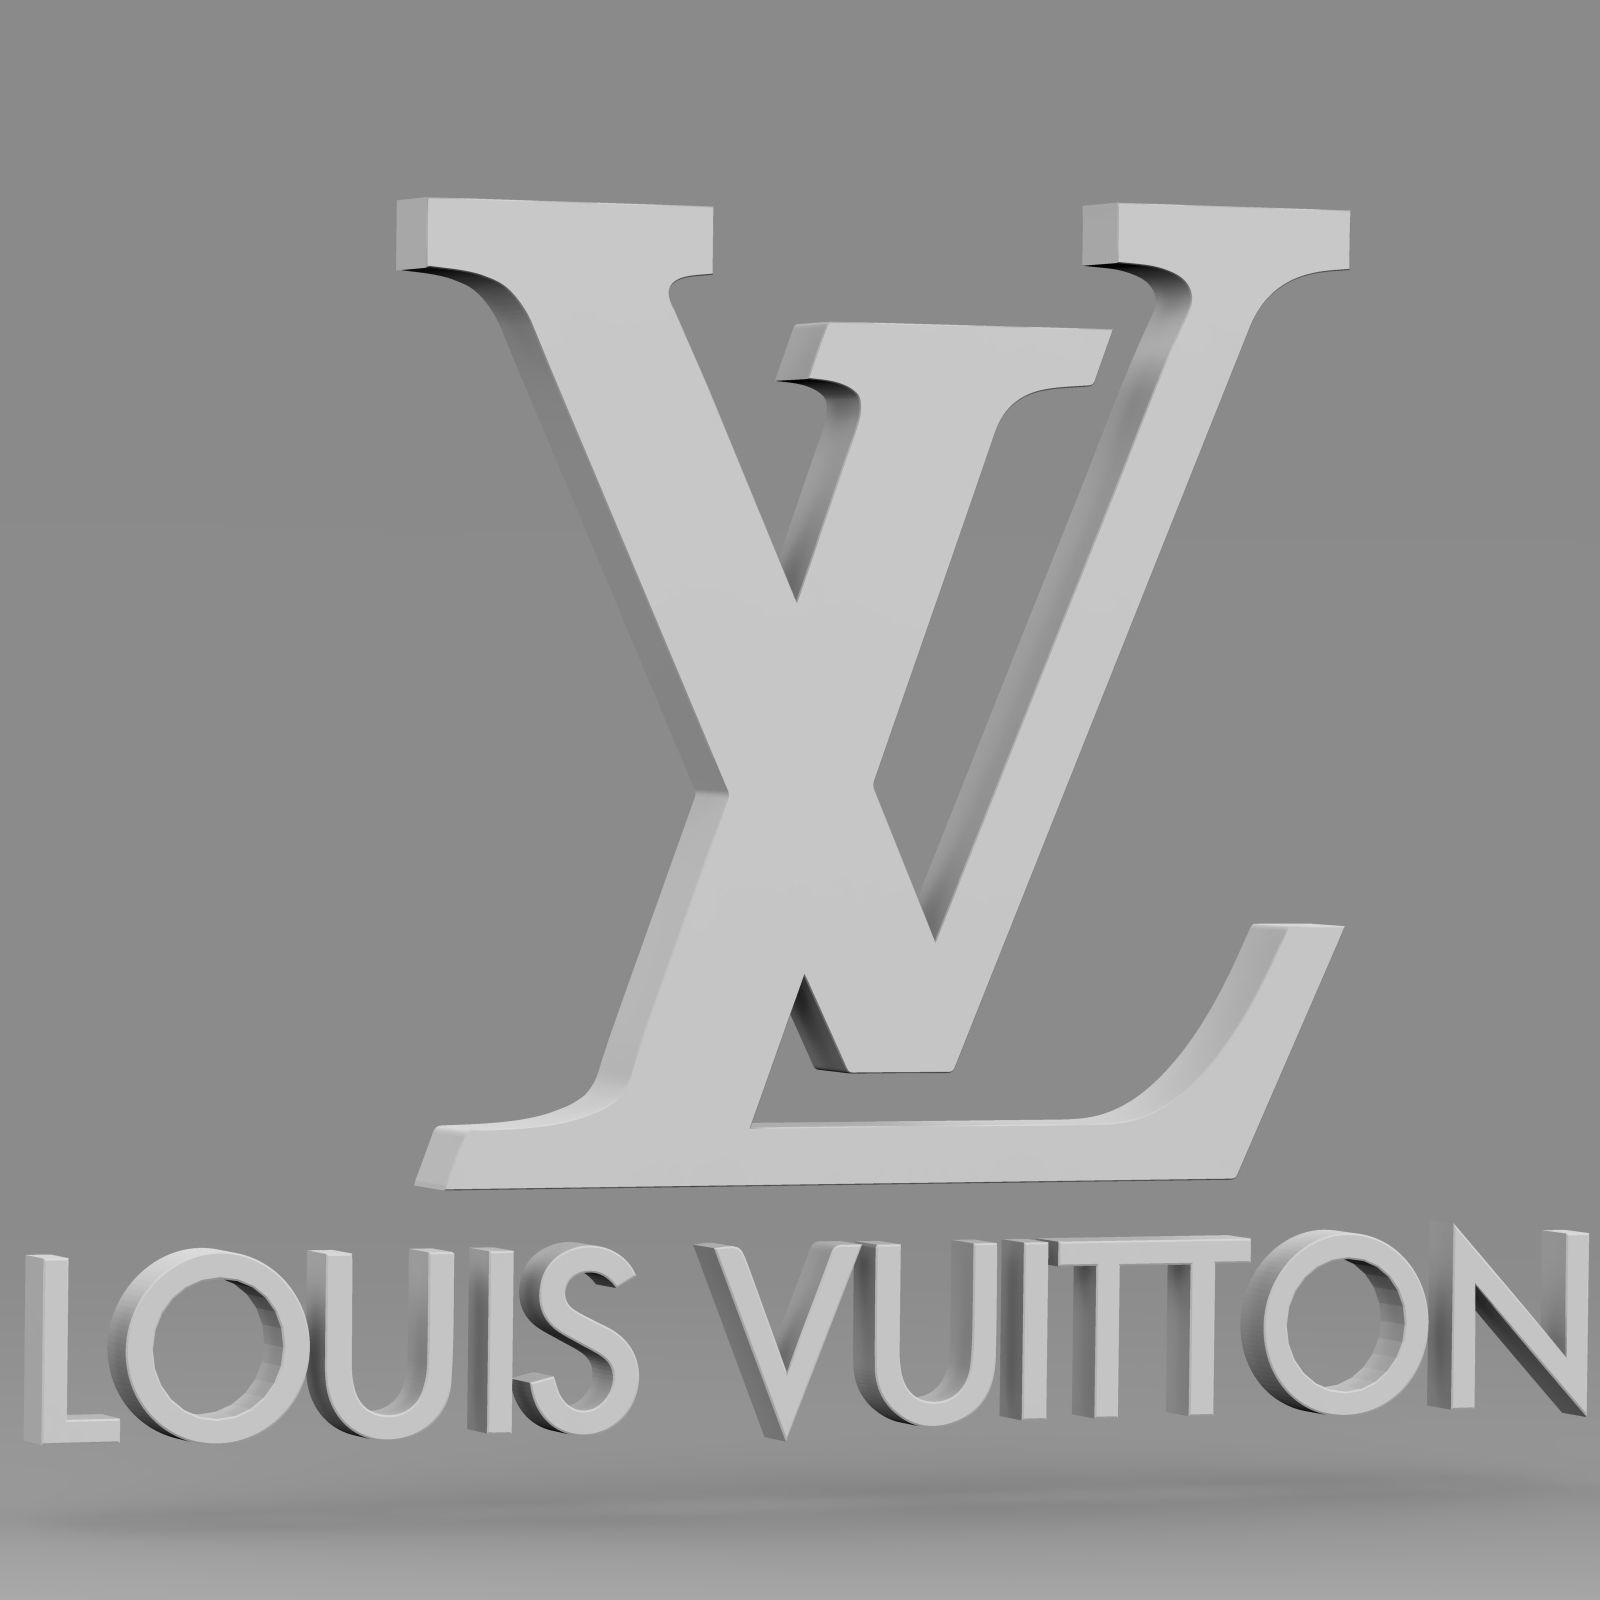 Vuitton Logo - 3D model Louis Vuitton logo | CGTrader